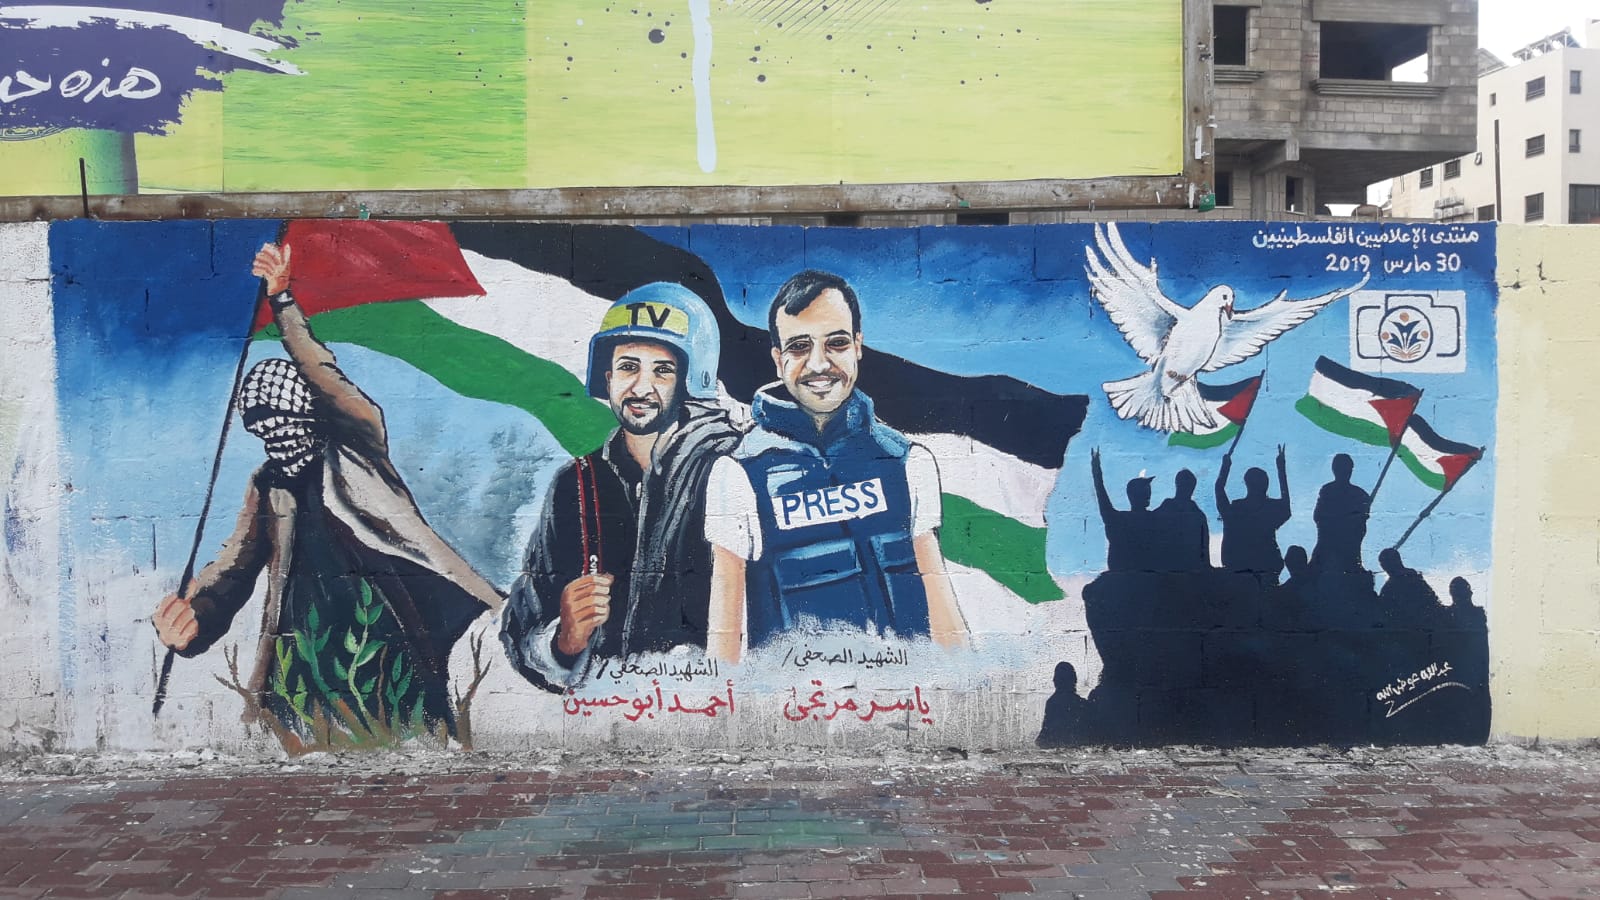 تدشين جدارية الوفاء لفرسان الإعلام الفلسطيني بغزة